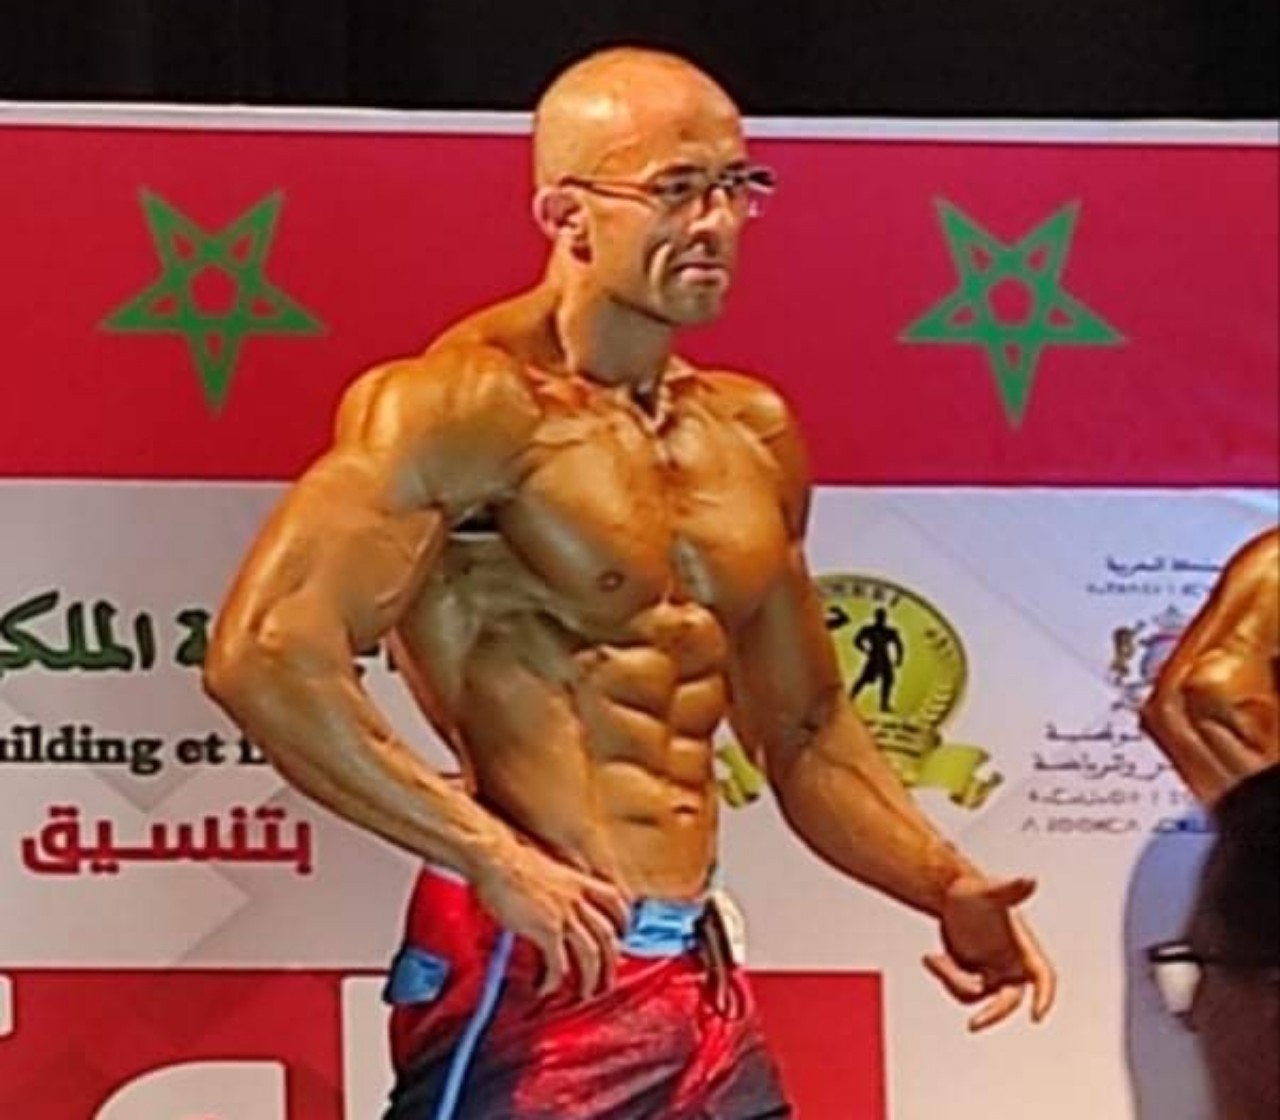 صديق الرابور "مسلم" يتوج بطلا لبطولة المغرب لكمال الأجسام